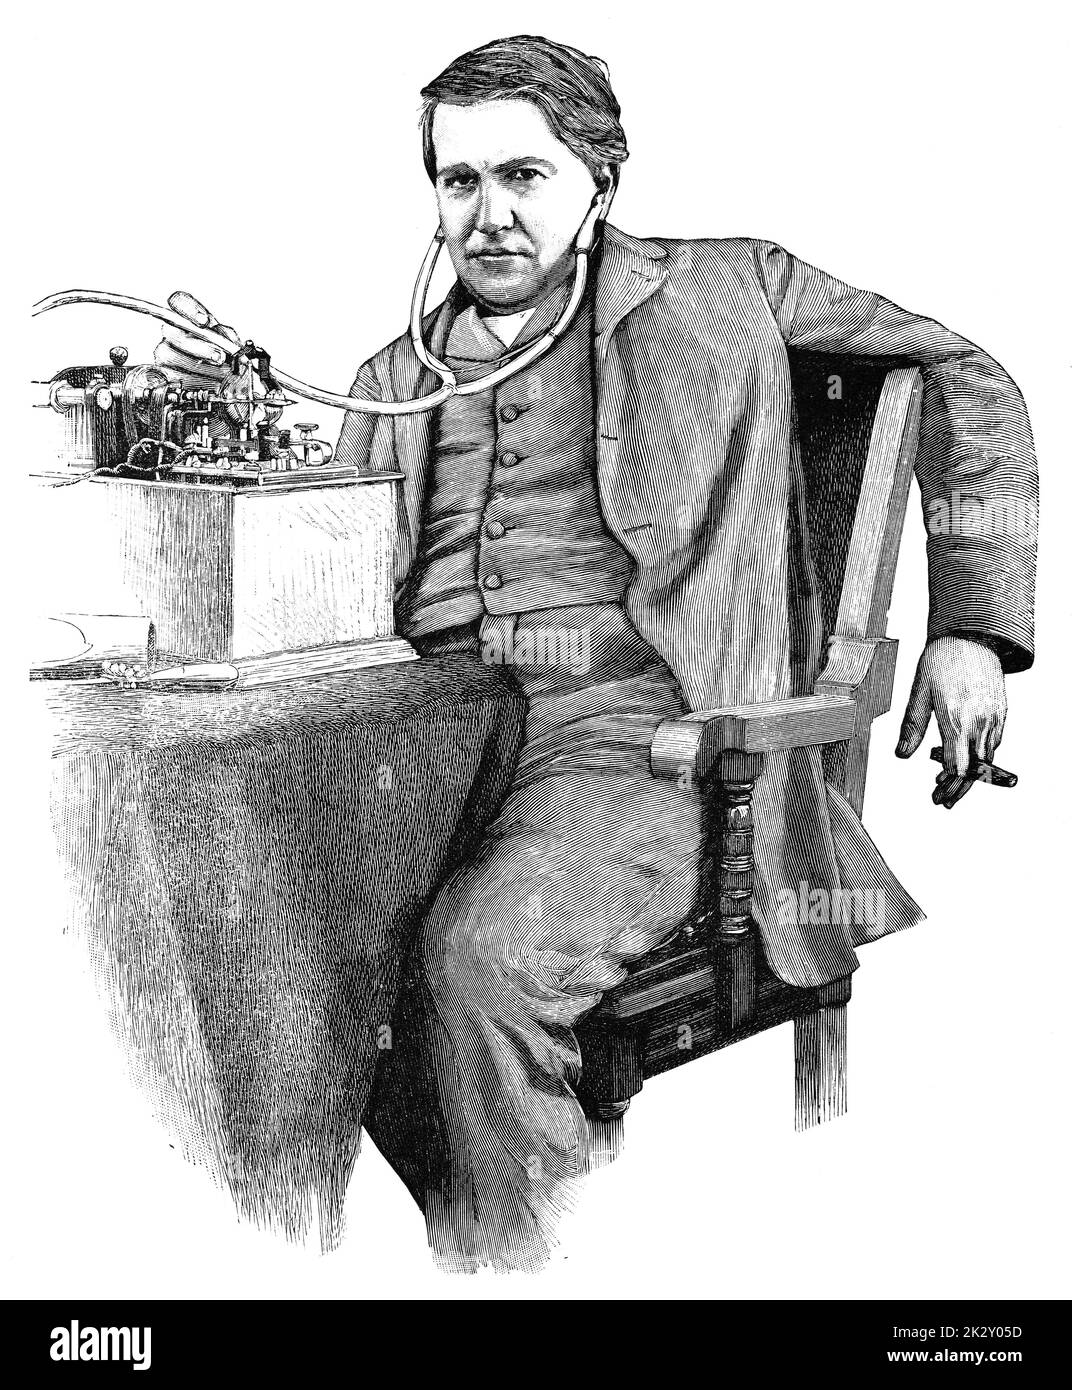 Porträt von Thomas Alva Edison - ein amerikanischer Erfinder und Geschäftsmann, der als Amerikas größter Erfinder beschrieben wurde. Illustration des 19. Jahrhunderts. Deutschland. Weißer Hintergrund. Stockfoto